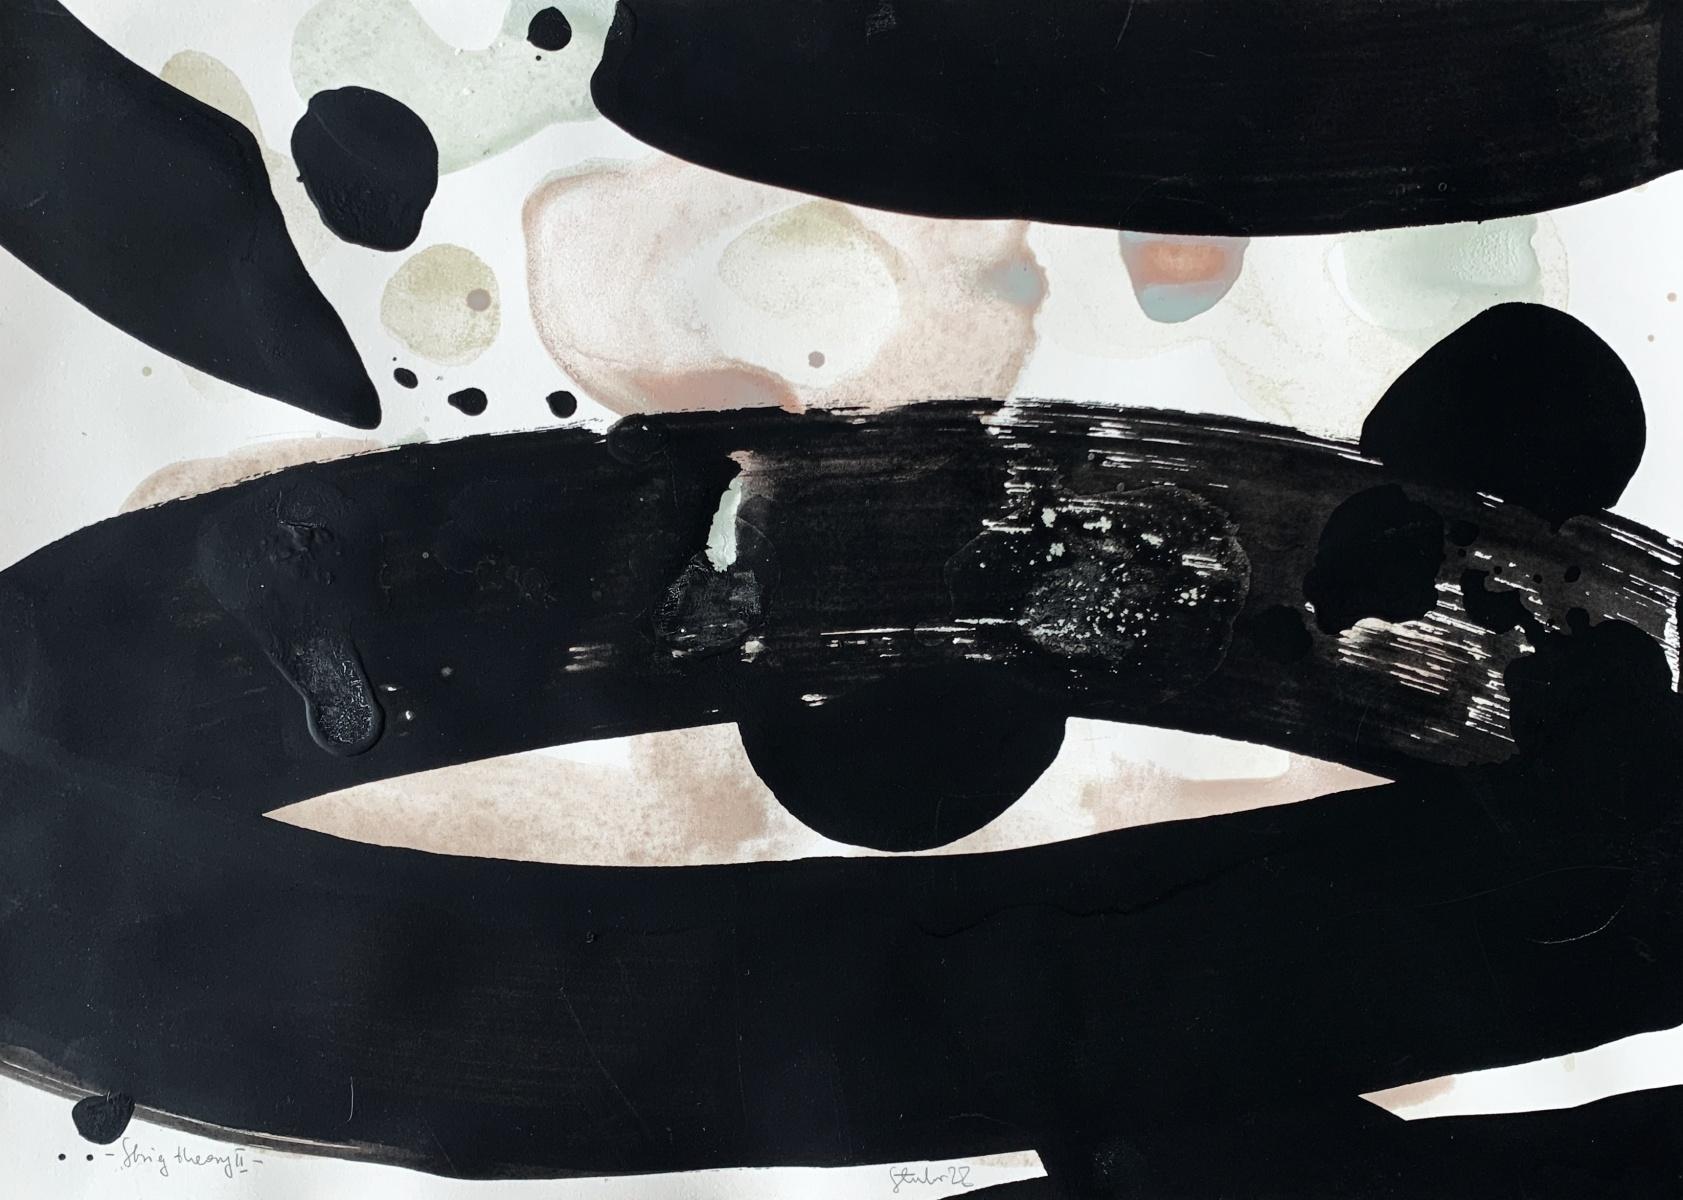 Stringtheorie 2 - Abstraktion, Acryl auf Papier, Kosmos, polnische Künstlerin – Mixed Media Art von Marianna Stuhr